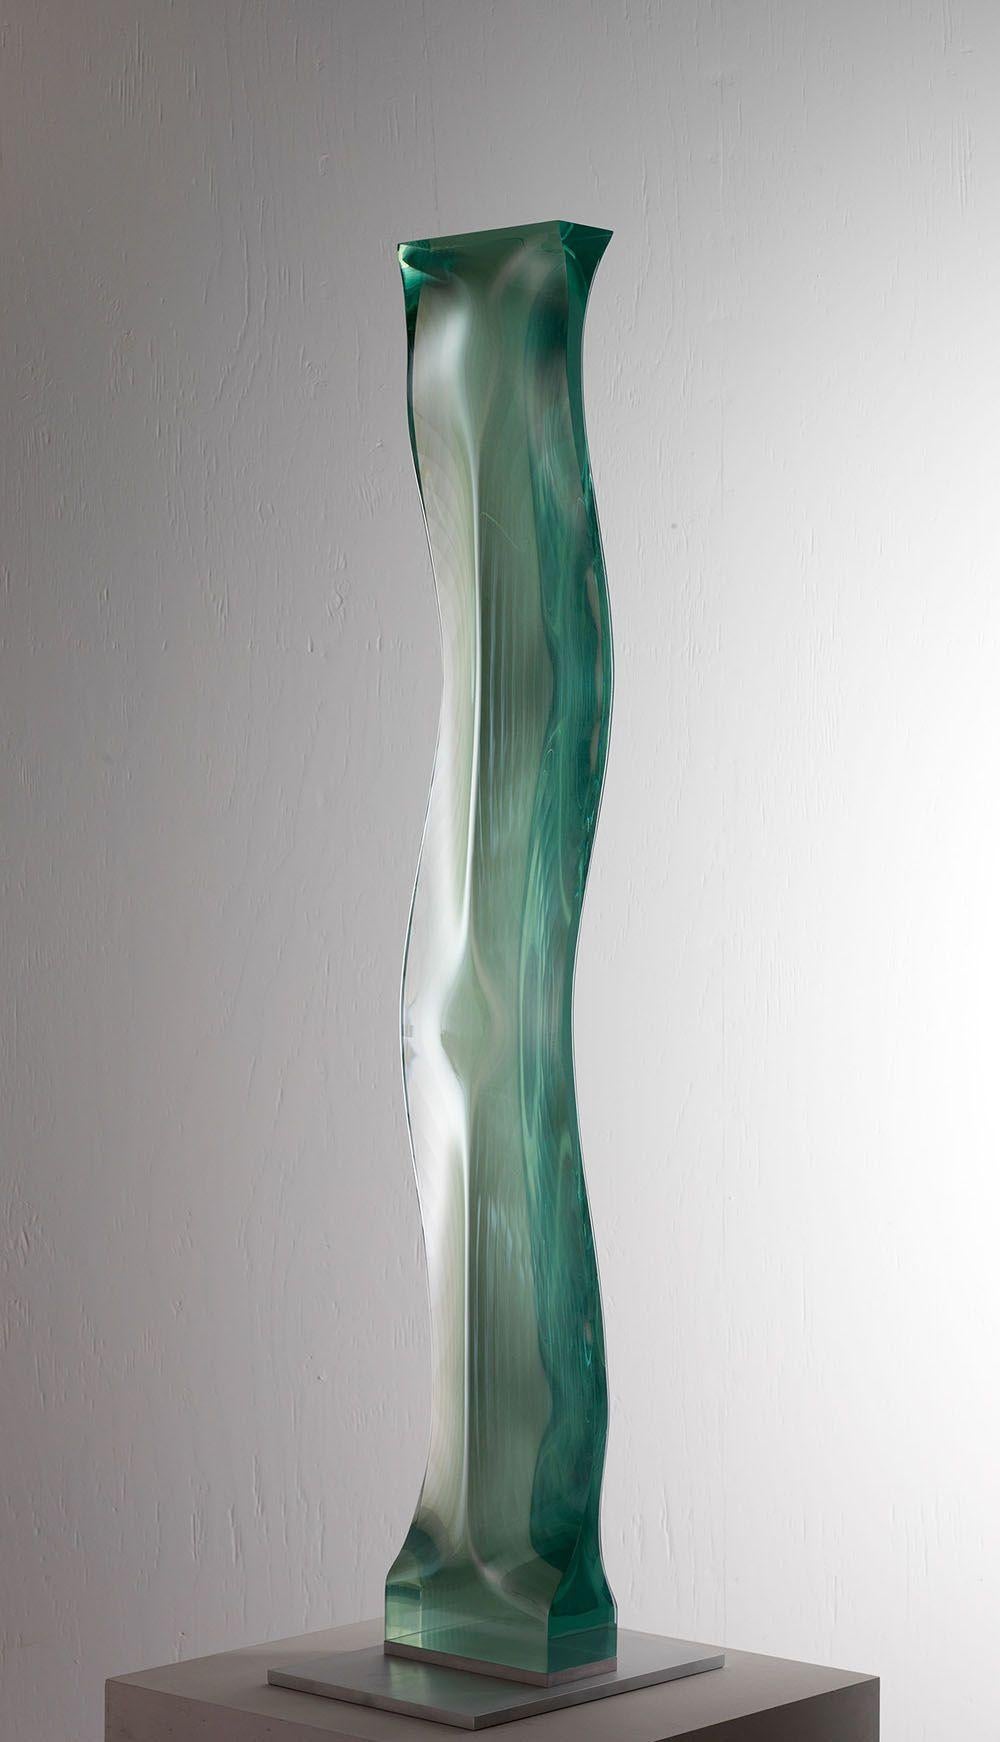 M.080601 von Toshio Iezumi - Contemporary Glasskulptur, grün, abstrakt, lang 3